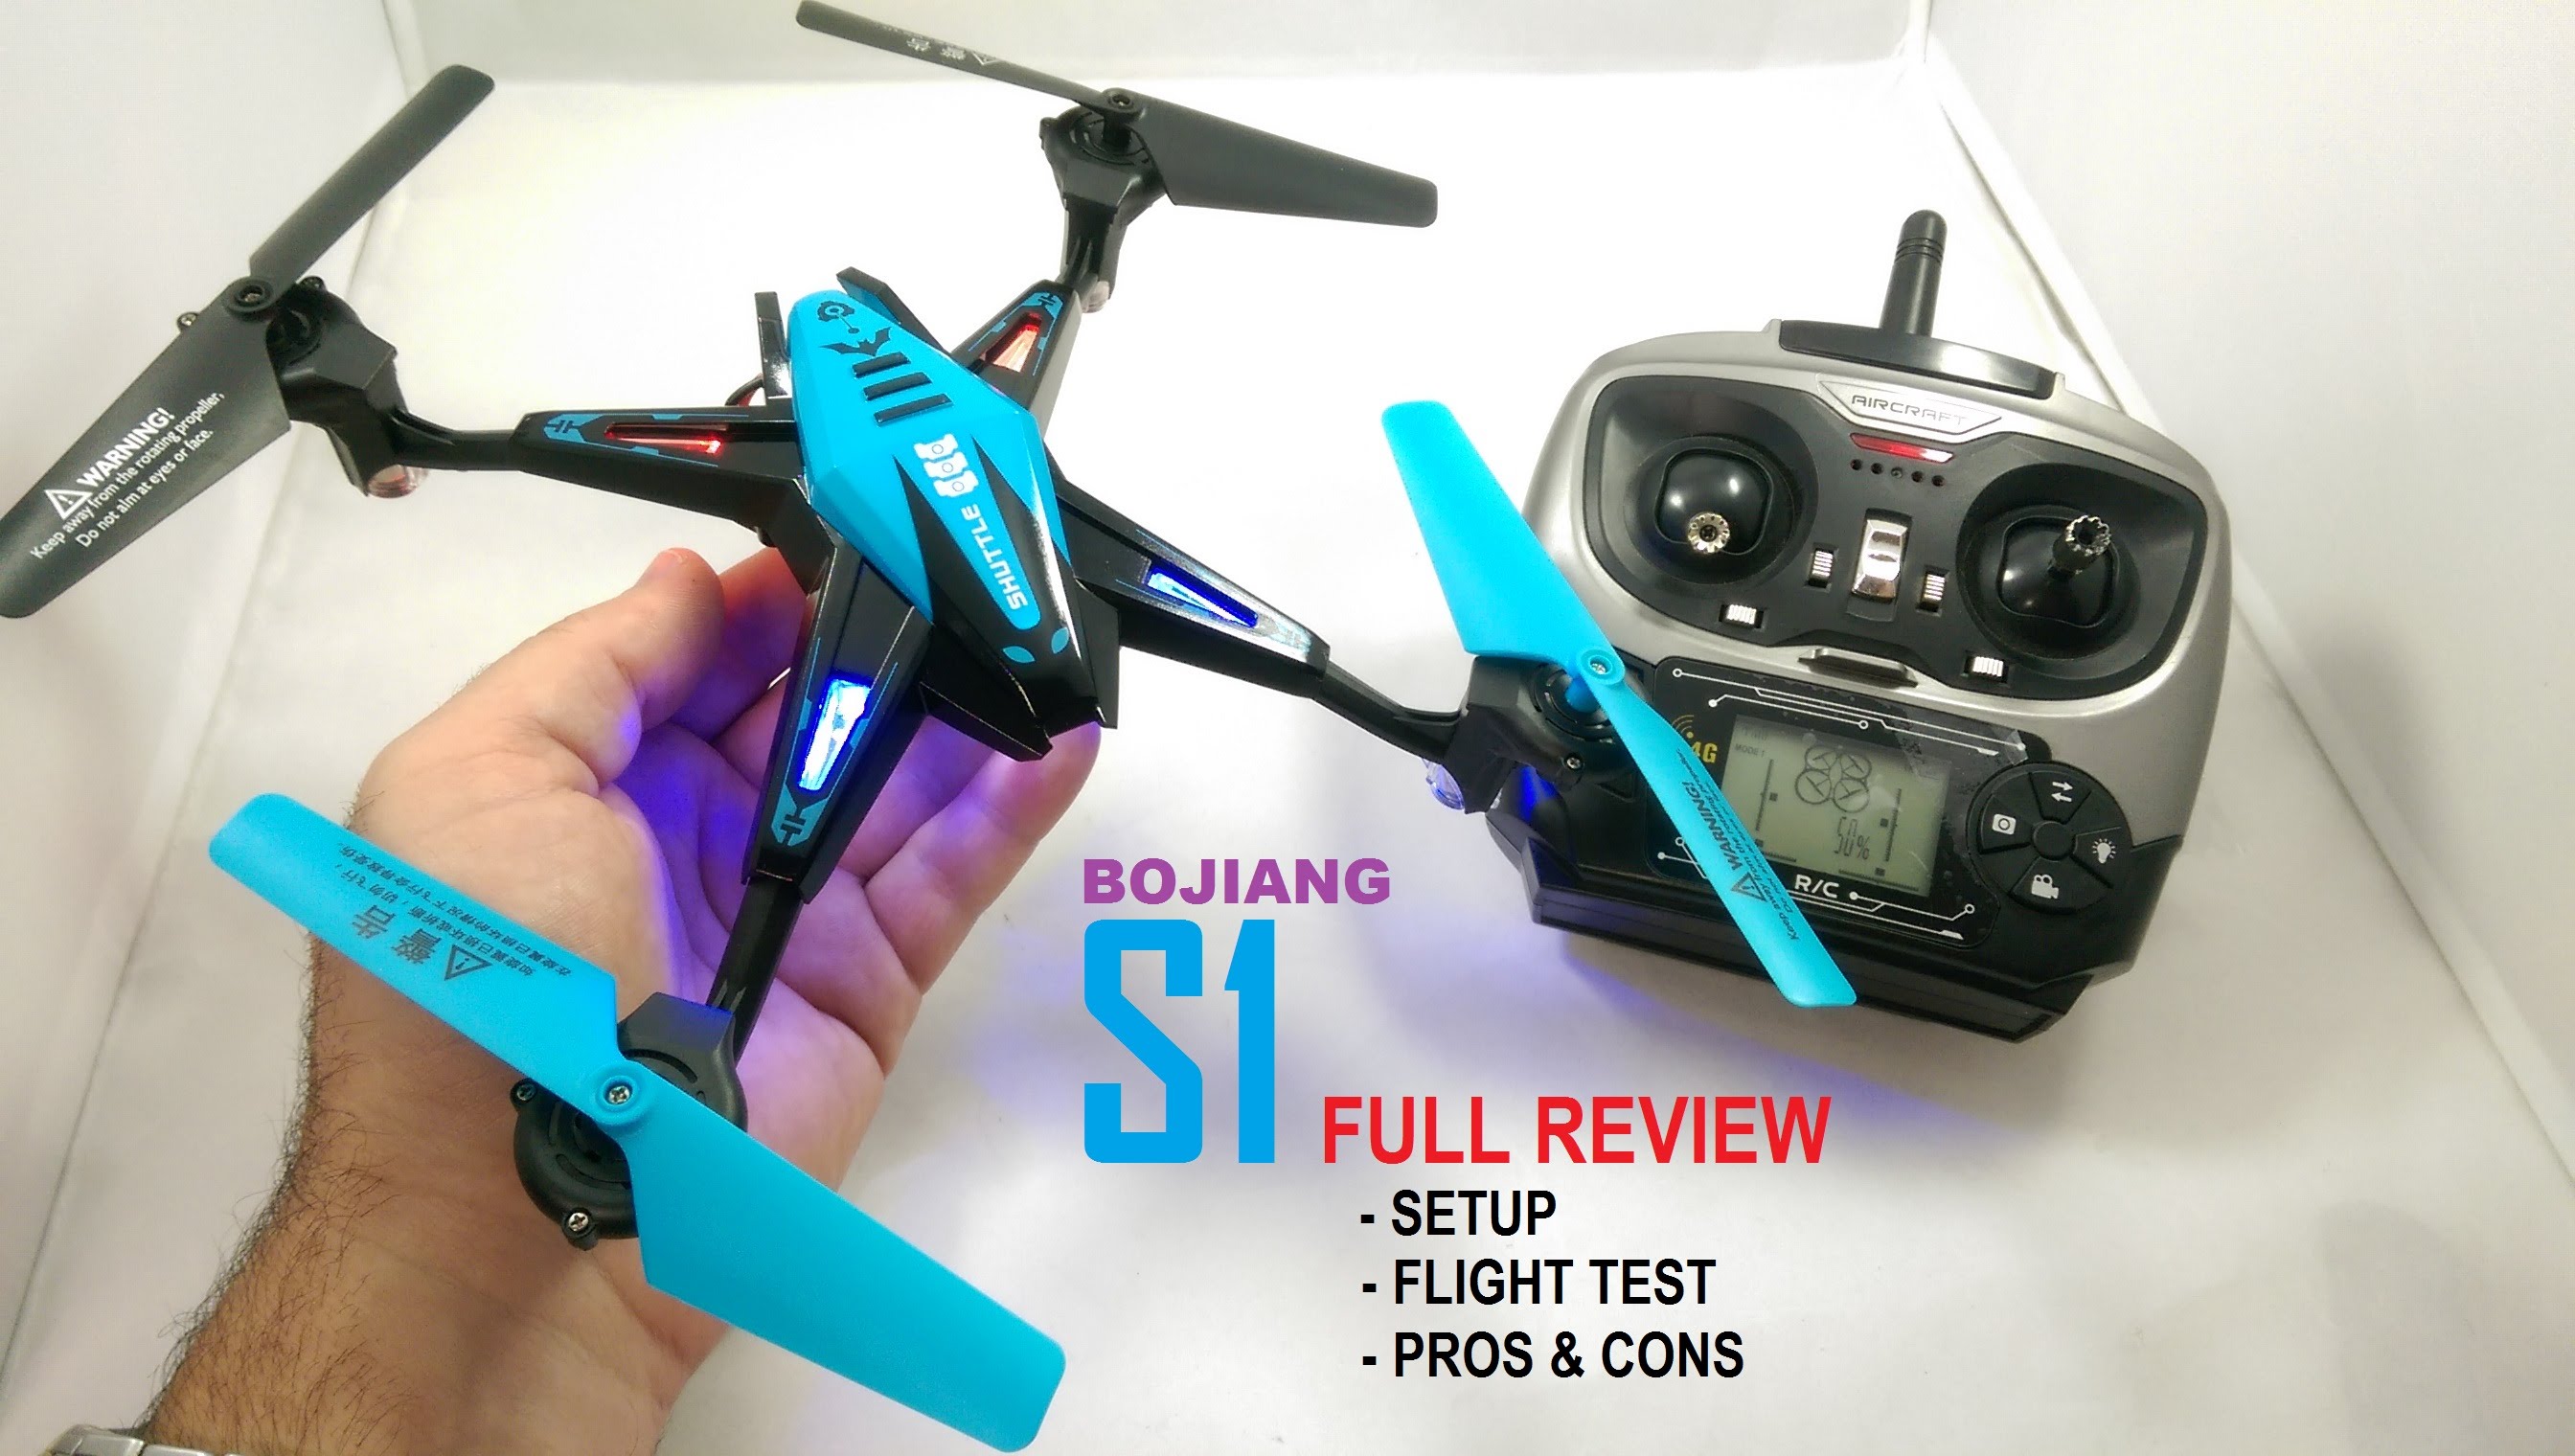 BOJIANG S1 QuadCopter Drone Review (Nihui U807 Killer?) – [Setup, Flight Test, Pros Cons]